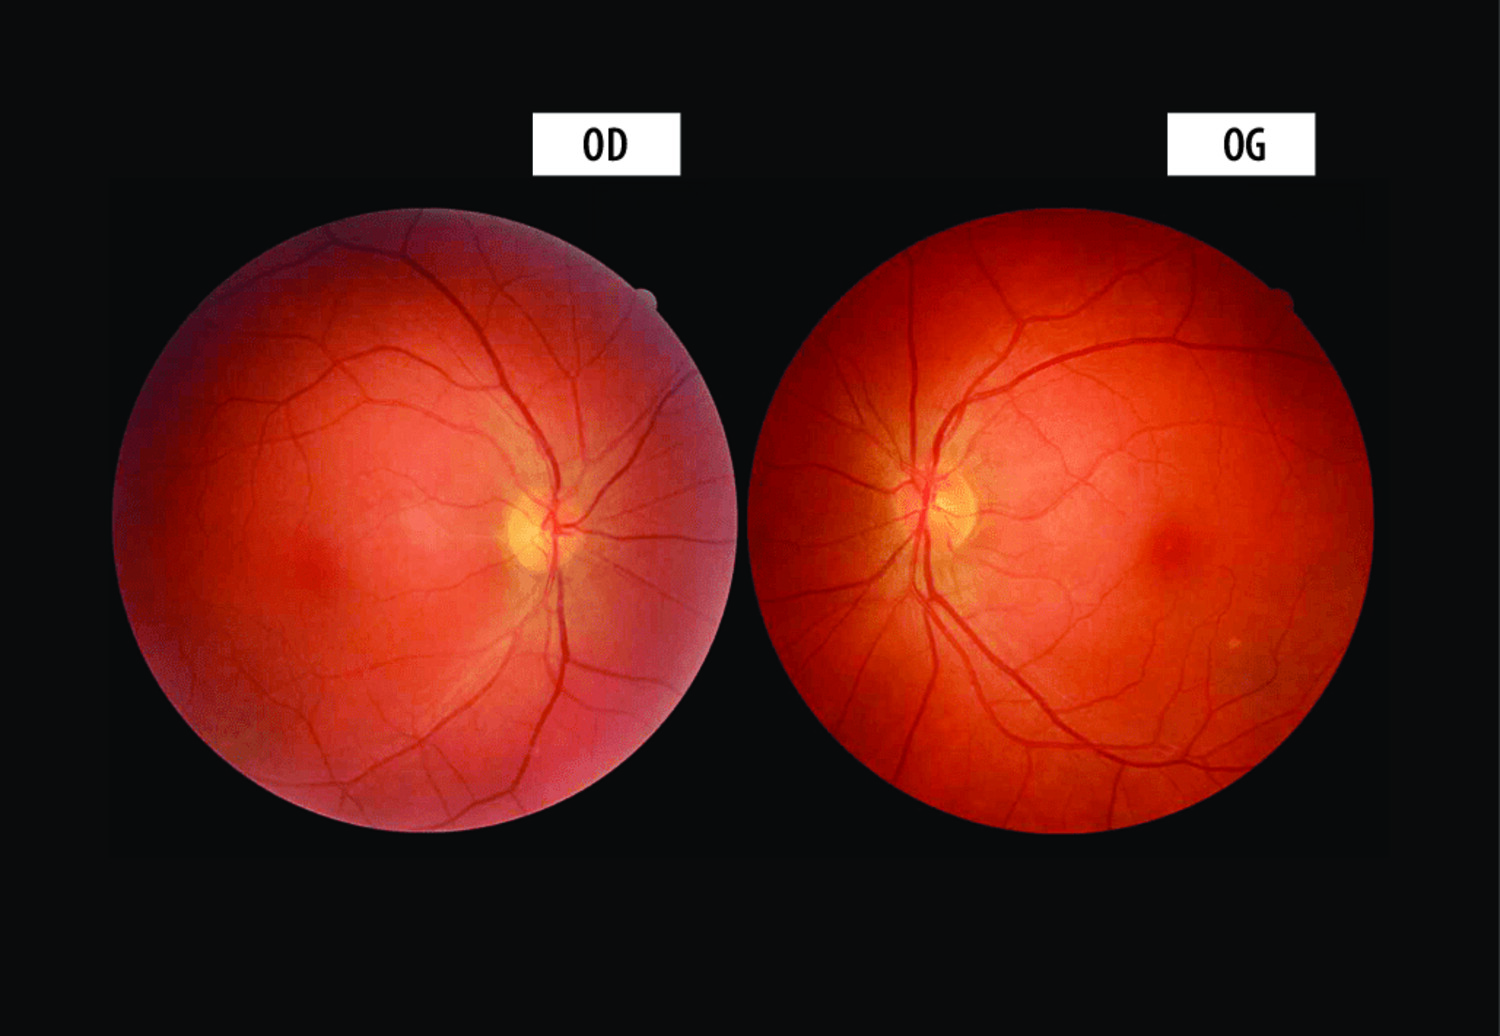 Baisse d’acuité visuelle indolore chez un jeune adulte : penser à la neuropathie optique héréditaire de Leber  - Figure 2